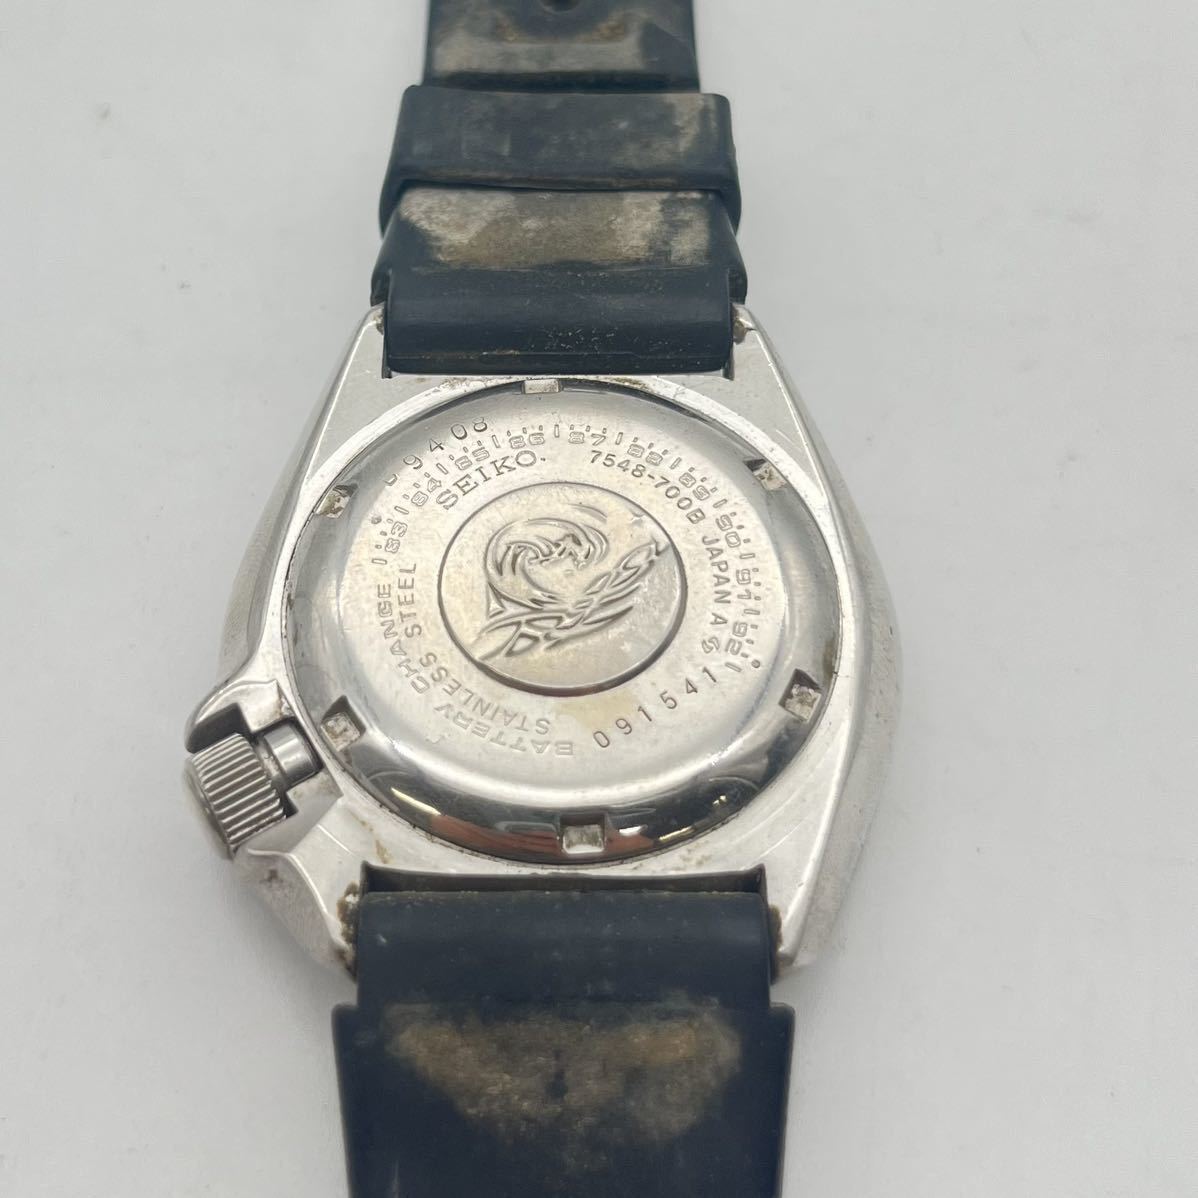 曽我部 12月 No.10 可動品 腕時計 SEIKO セイコー 7548-700B ブラック系 メンズ腕時計 デイデイト クオーツ ブランド_画像8